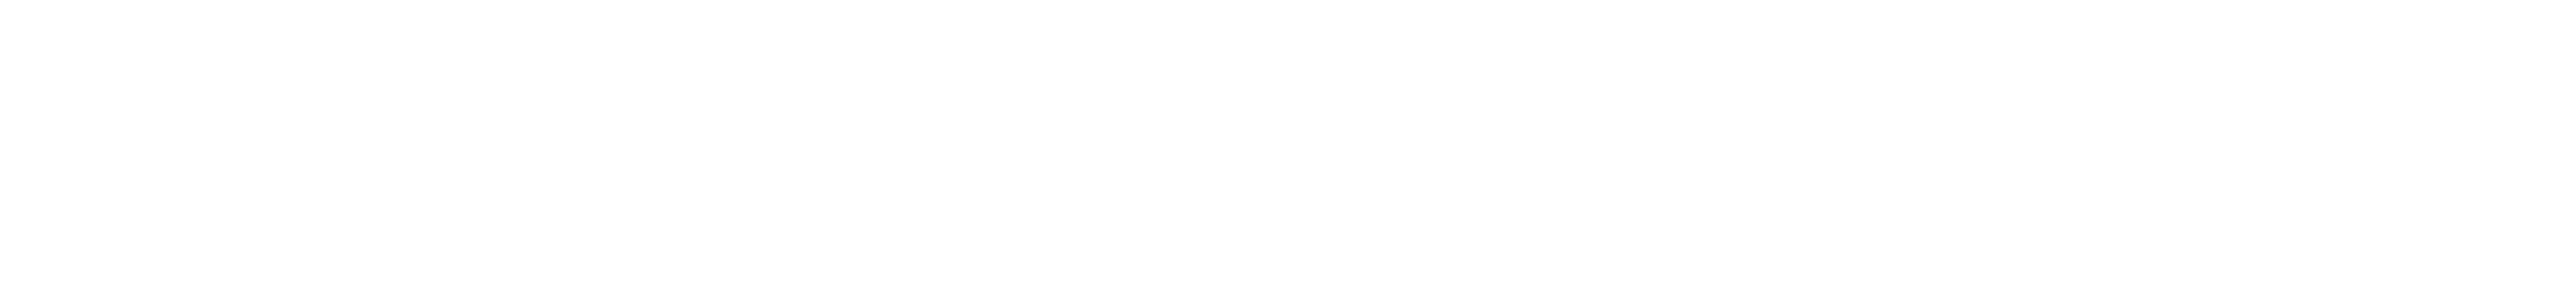 Trek-logo